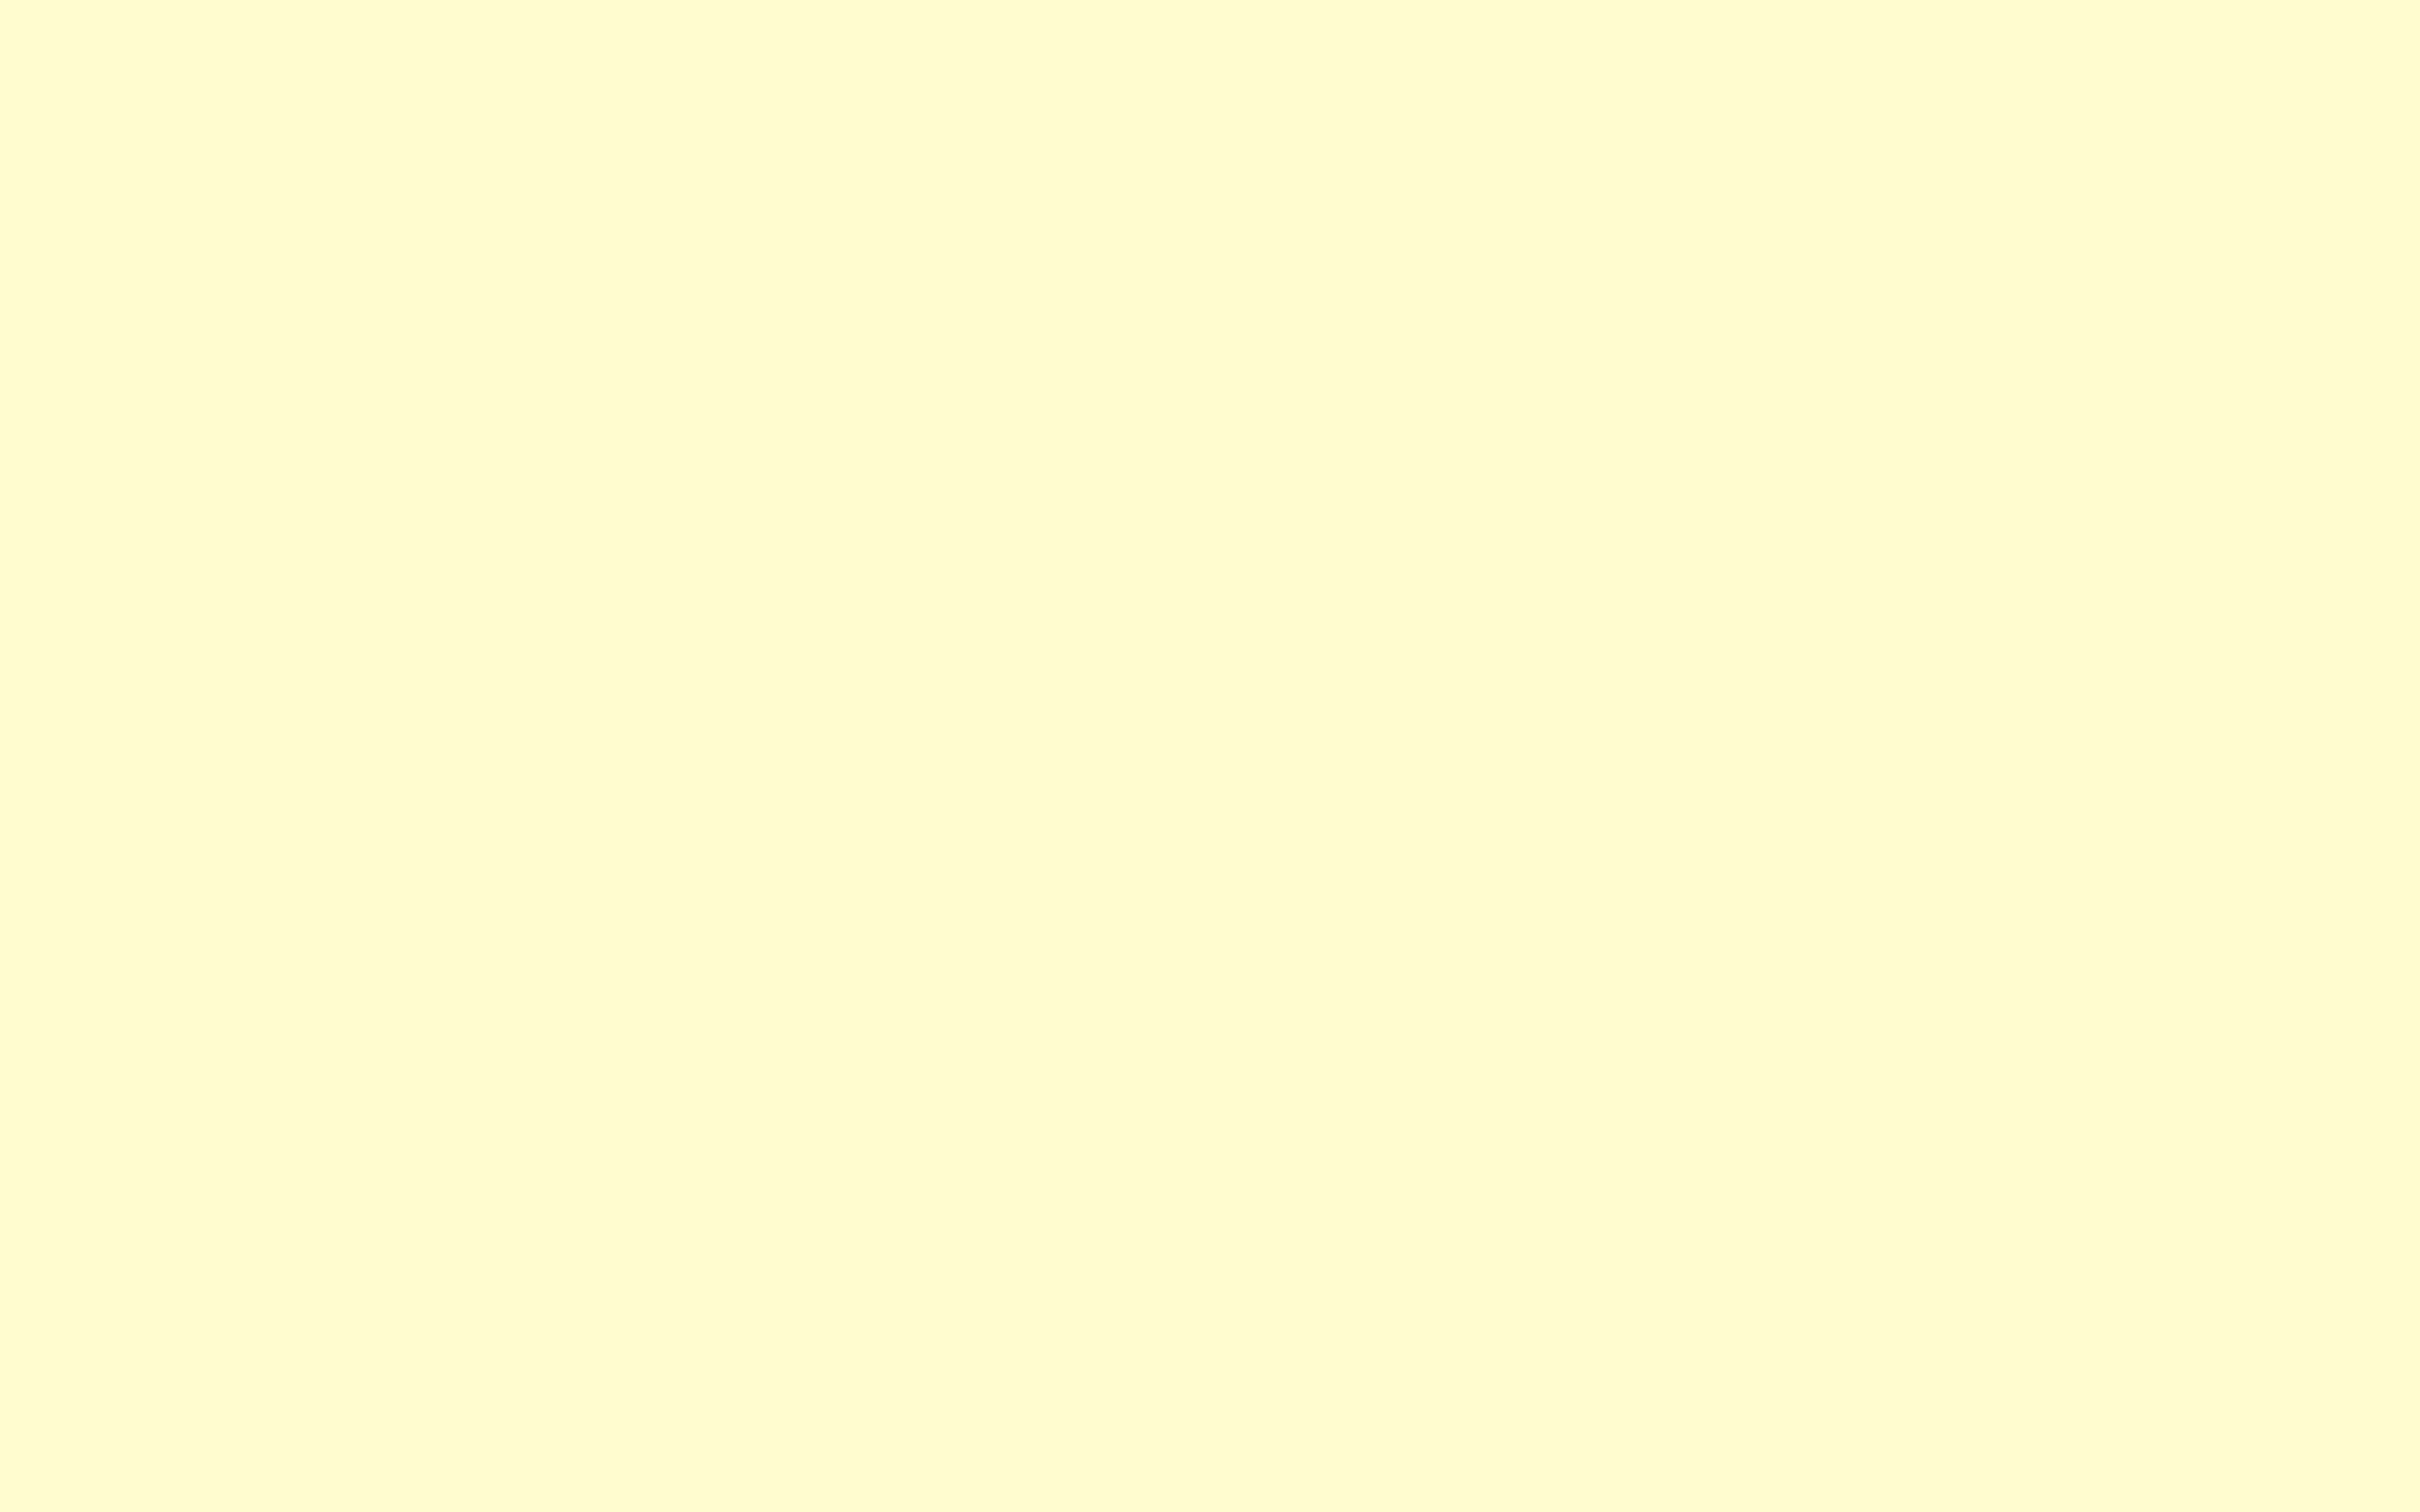 Pastel Yellow Laptop Wallpapers - Top Free Pastel Yellow Laptop